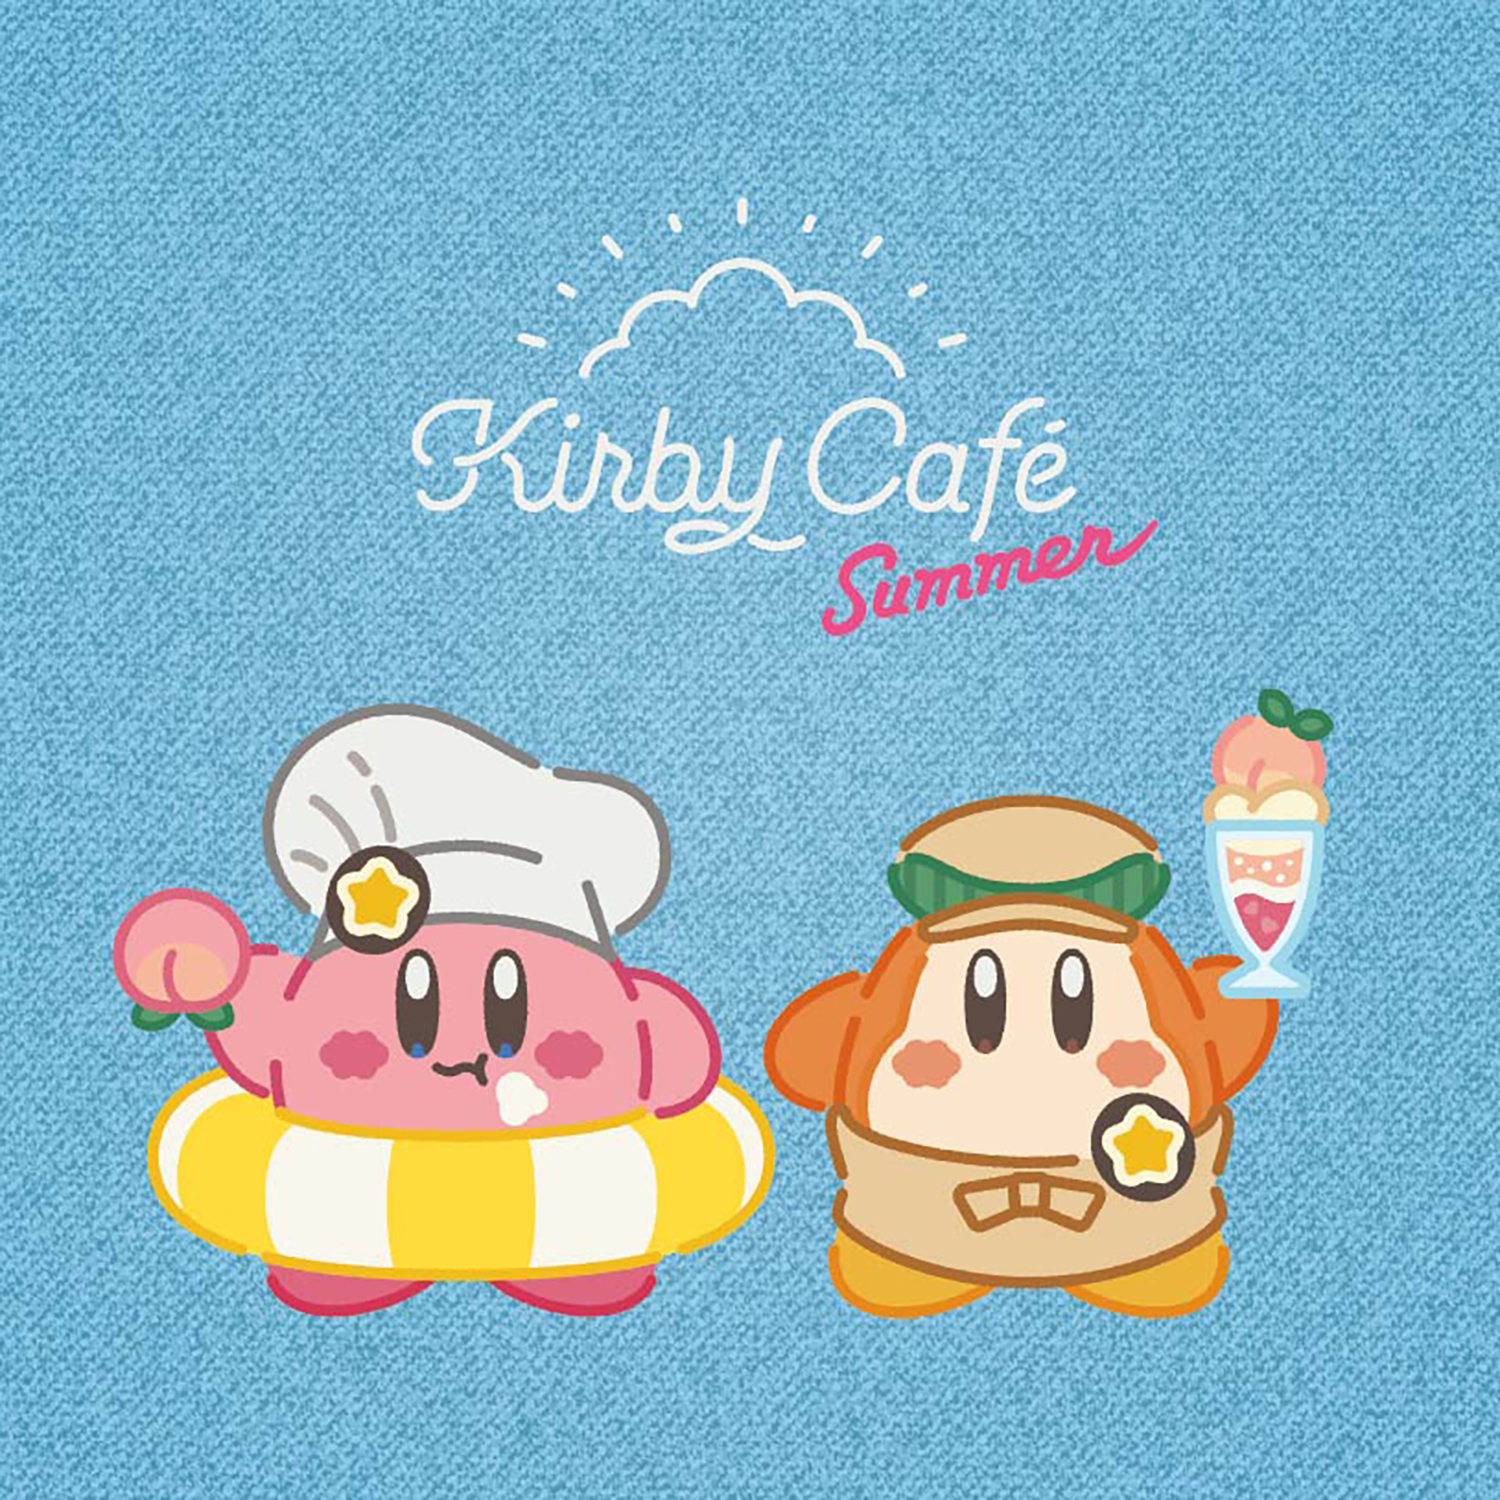 KirbyCafe_Summer2022_MainVisual_FIX